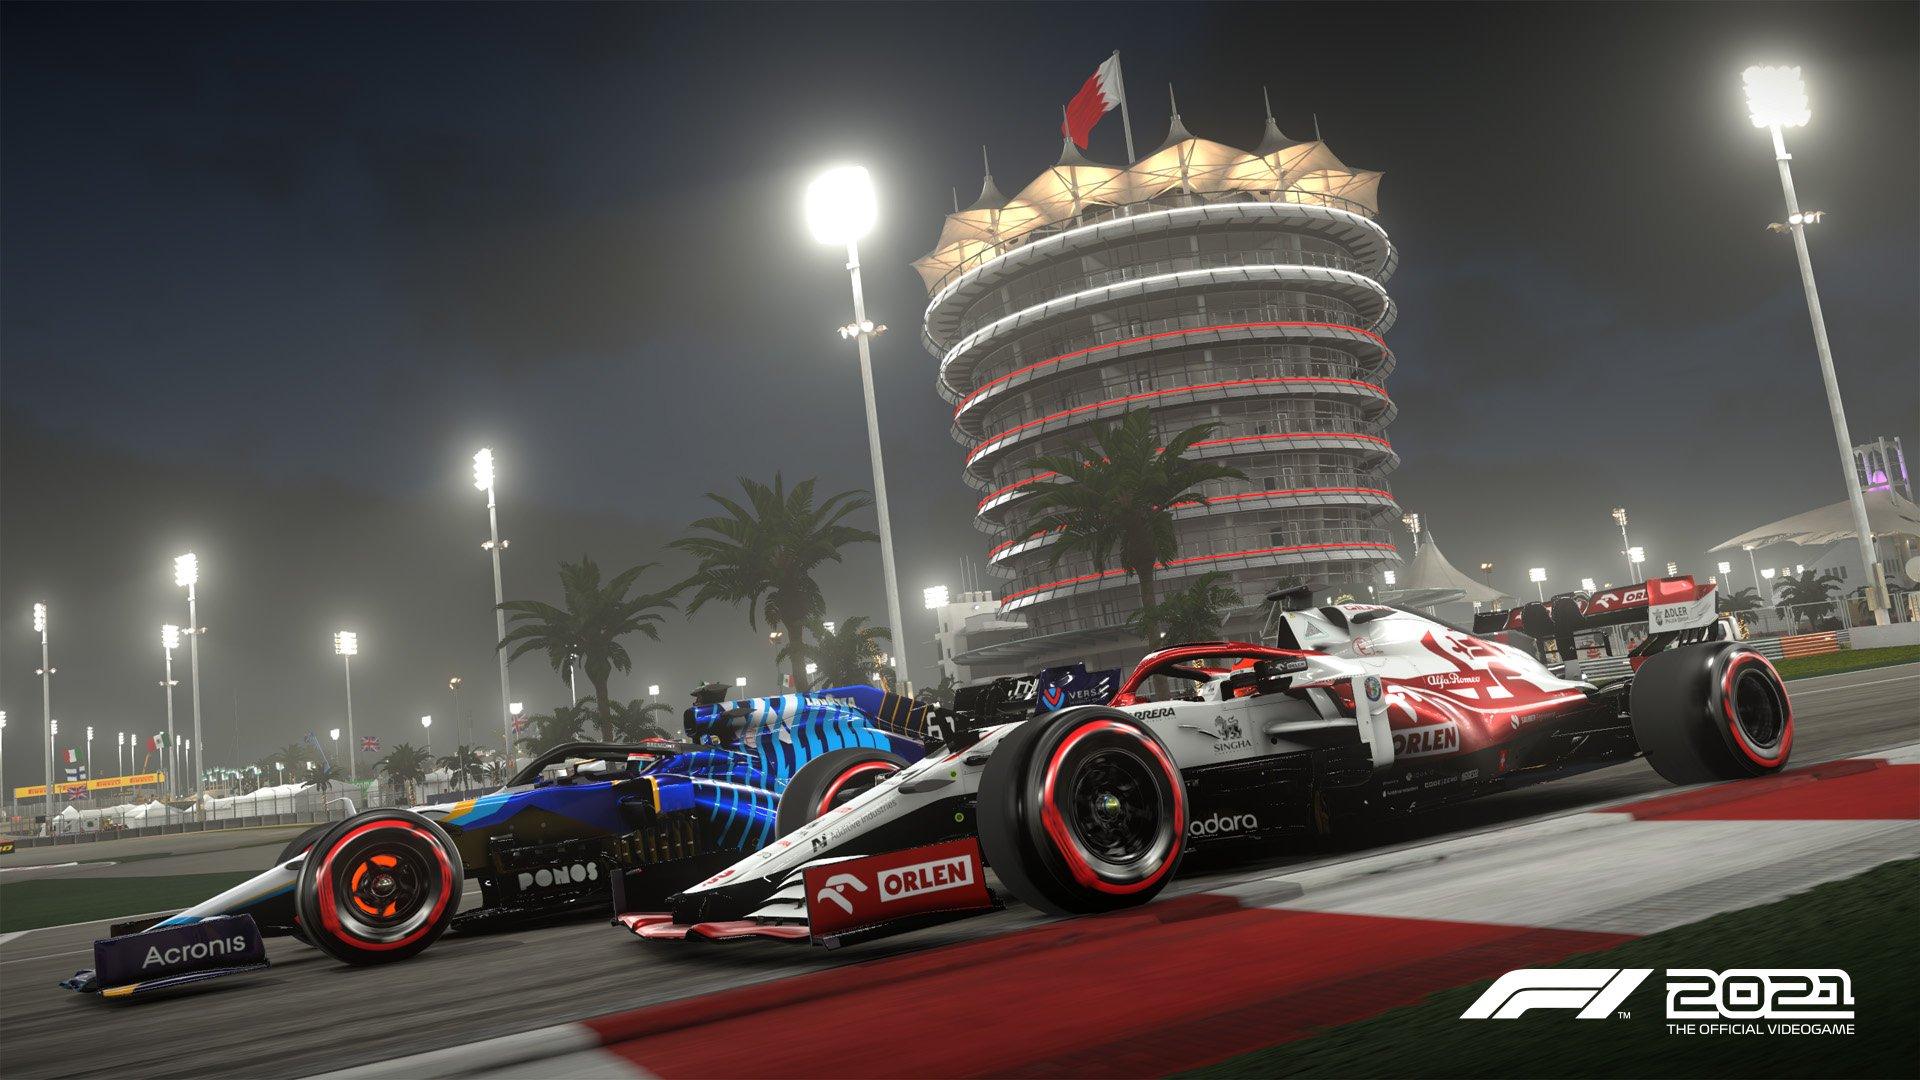 F1 2021 - PlayStation 5